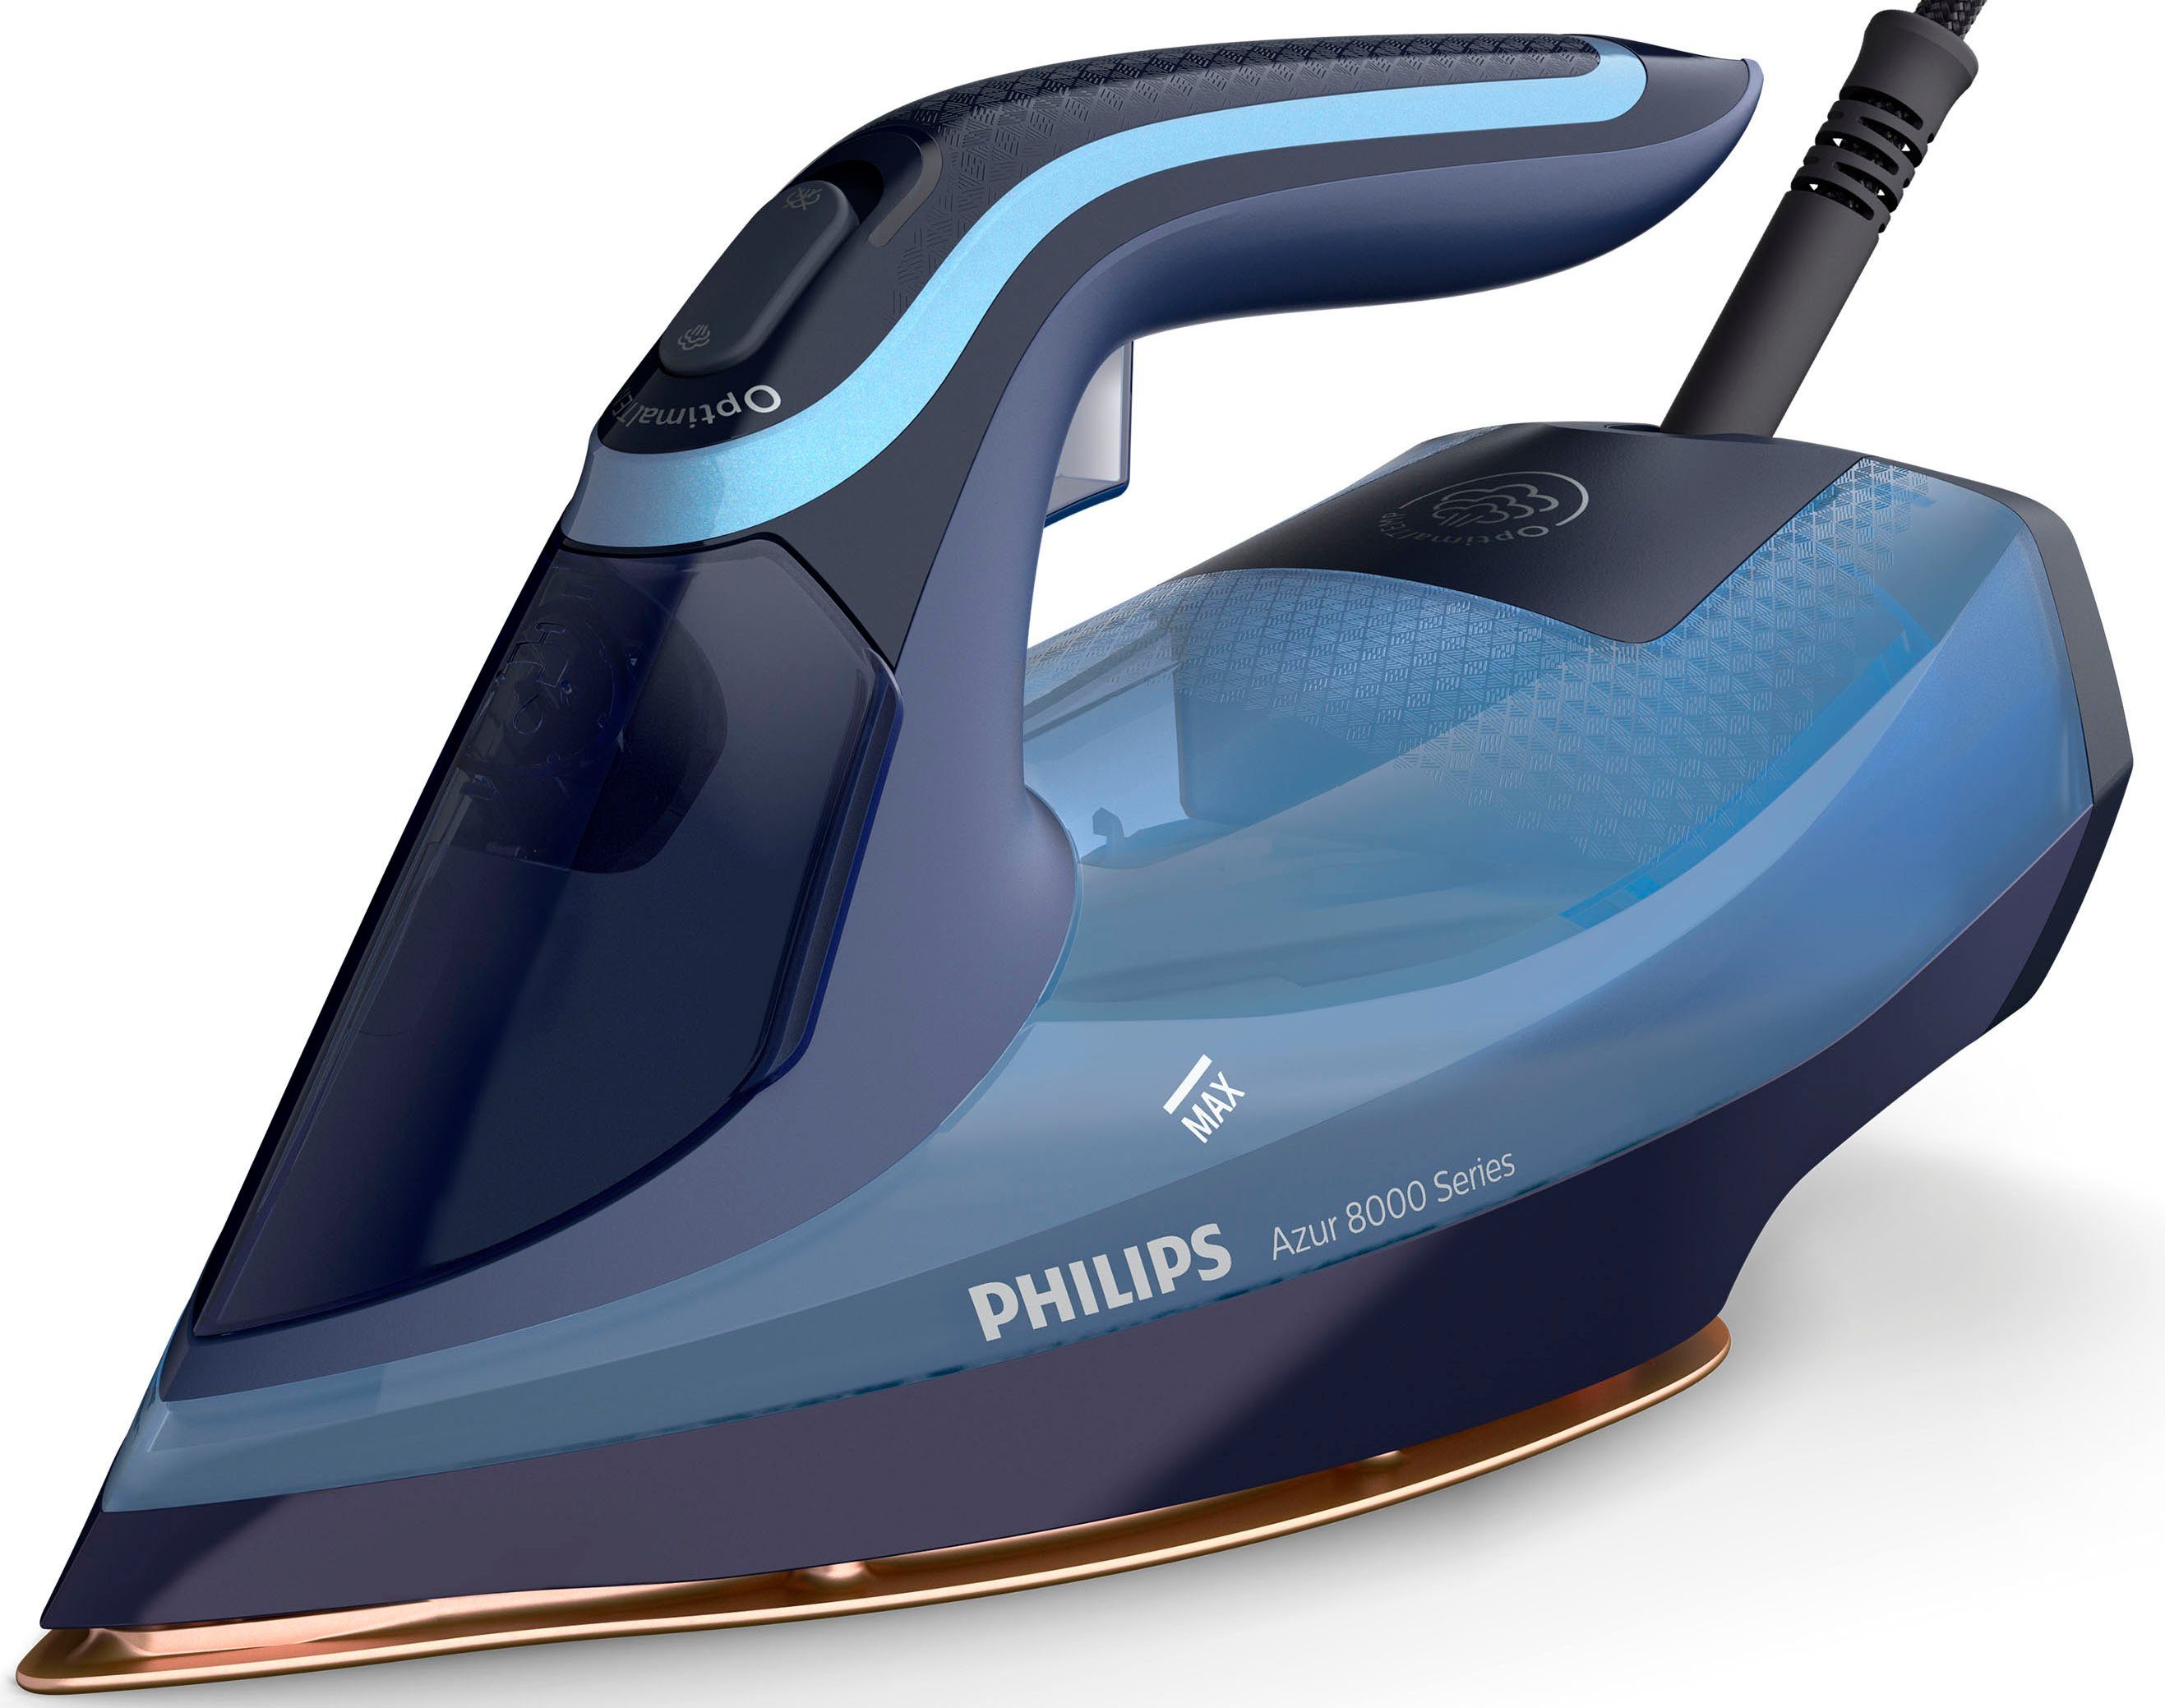 Philips DST8020-20 Stoomstrijkijzer Blauw